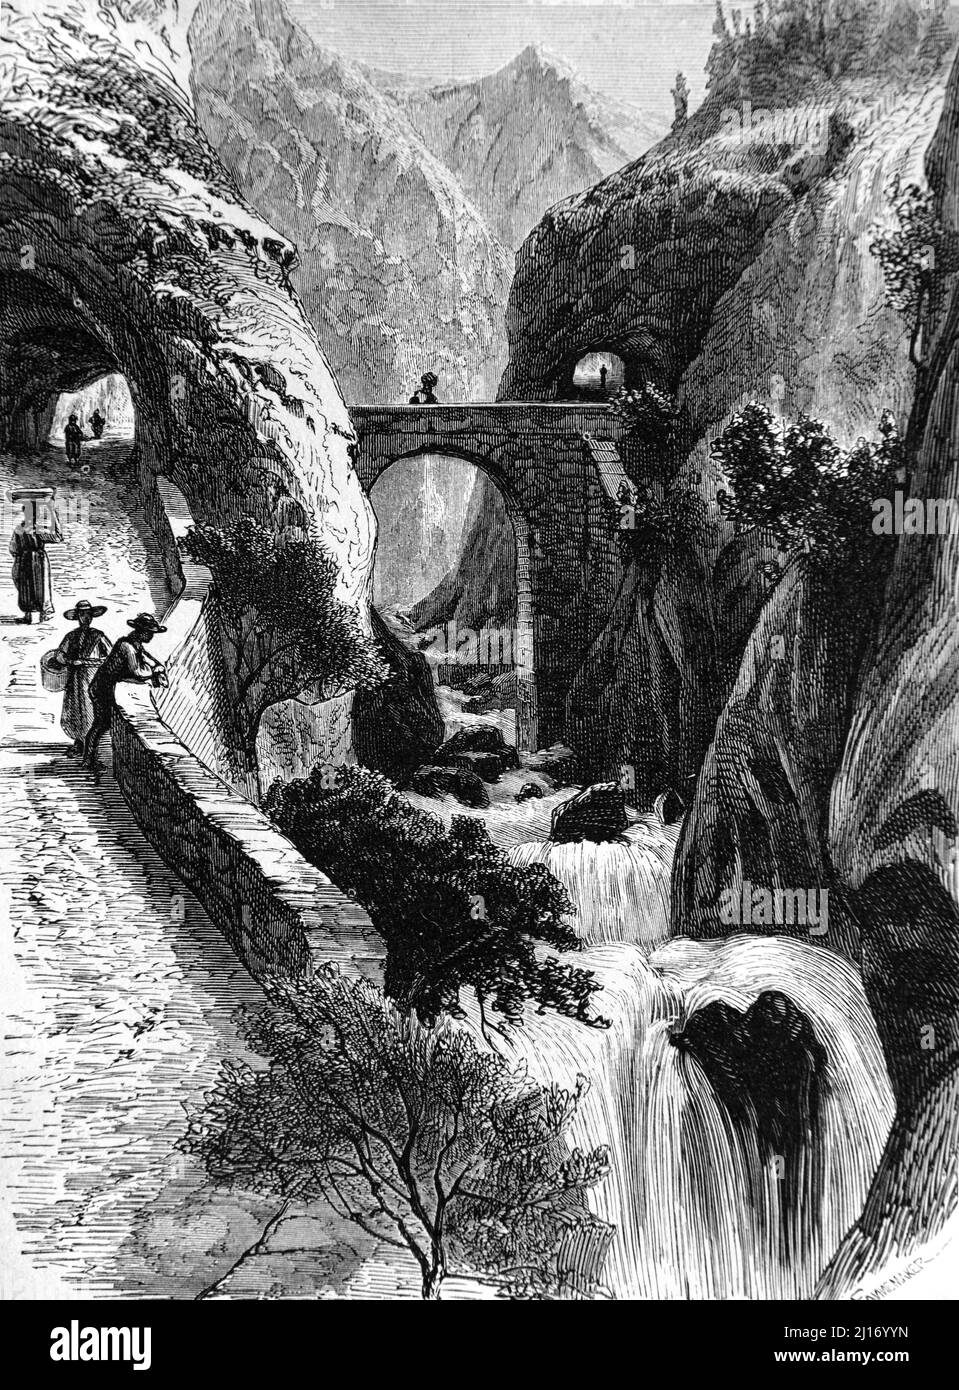 Les Grands Goulets Gorge, Waterfall & Vernaison River im Vercors-Massiv Drôme Frankreich. Vintage Illustration oder Gravur 1860. Stockfoto